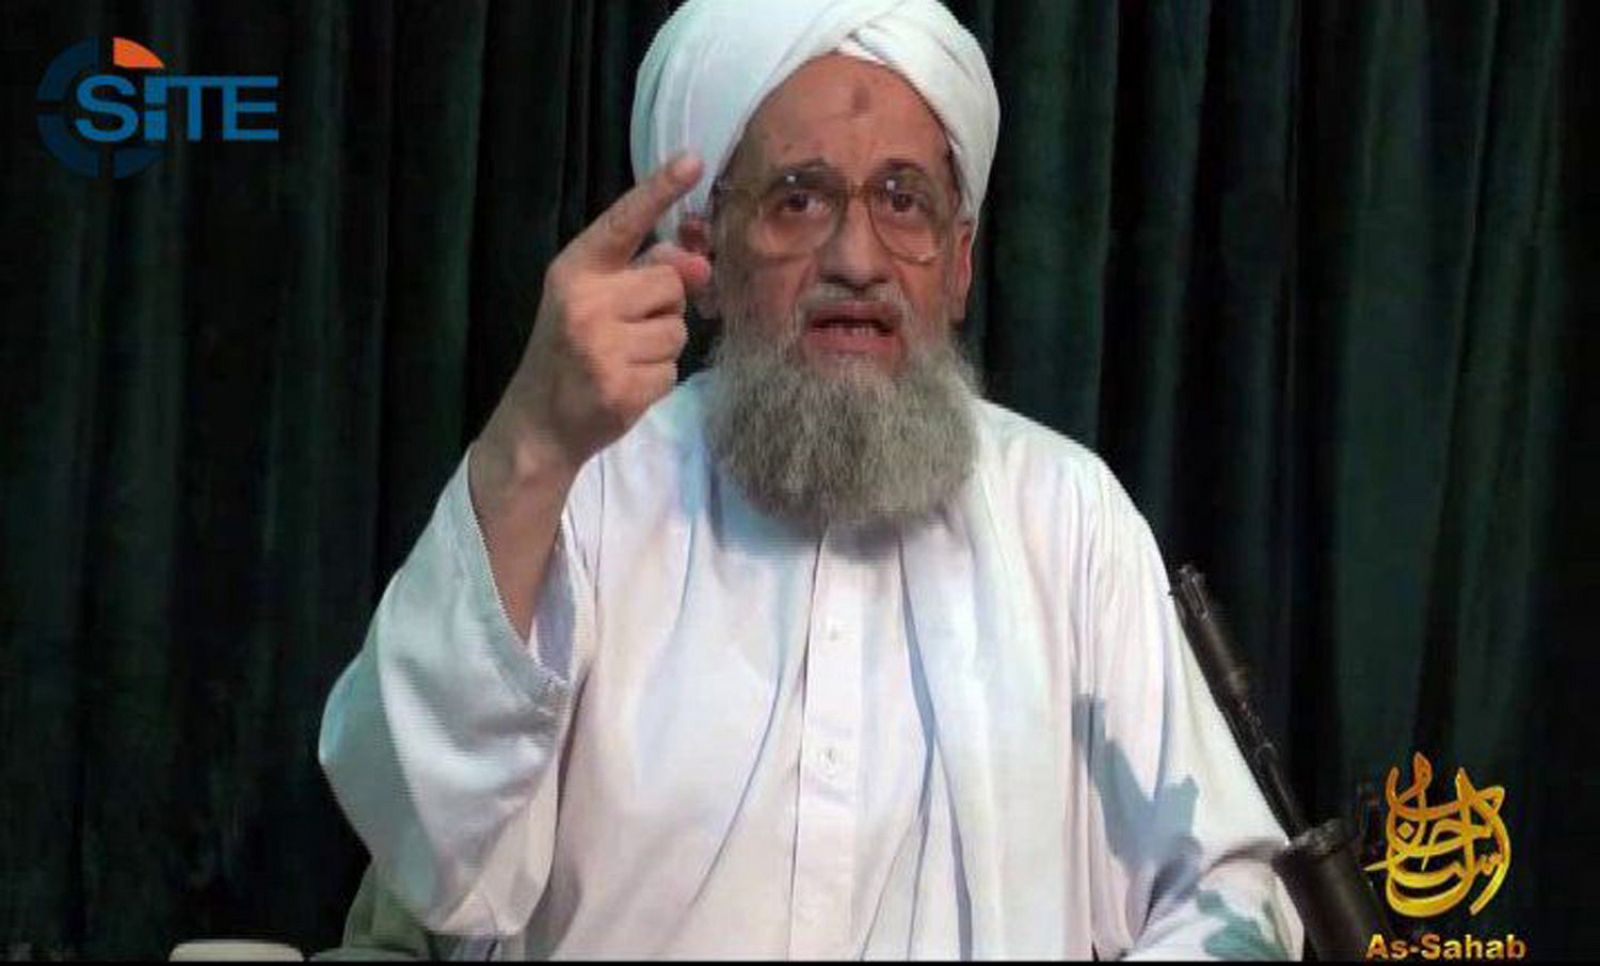 Imagen de Ayman al Zawahiri en el vídeo en el que alaba a los manifestantes sirios